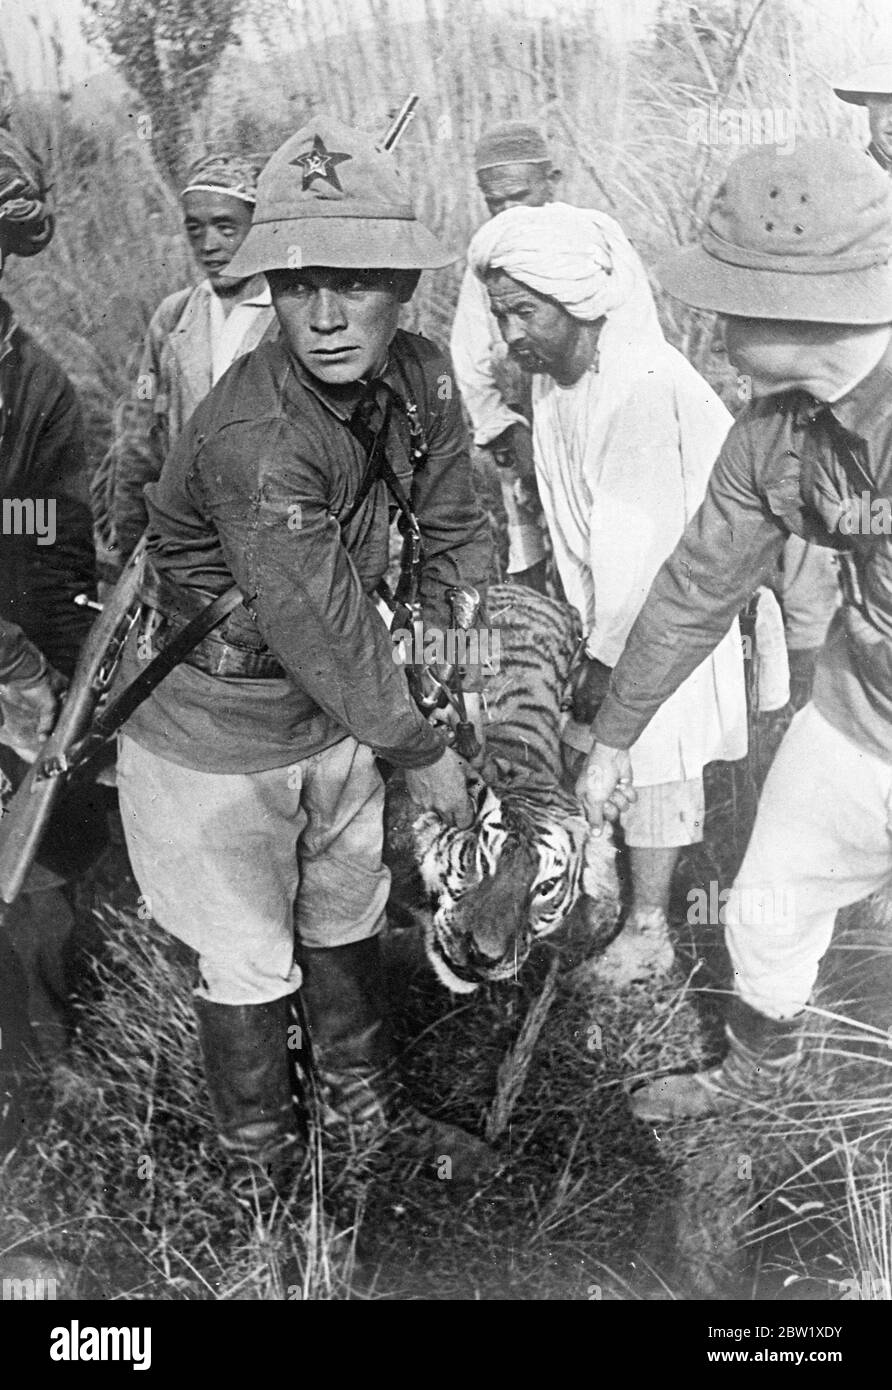 Caccia di una tigre nella giungla sovietica che segue un nemico dell'arco di un contadino. Queste sono le prime immagini mai fatte di una caccia alla tigre nelle giungle del fiume Pyaj, che scorre lungo i confini sud-occidentali della repubblica sovietica Tajik e dell'Asia centrale. Le tigri sono il flagello delle aziende agricole collettive di confine, che attaccano sia i viaggiatori che il bestiame. Quando si scopre una tigre, le guardie di frontiera e gli agricoltori organizzano immediatamente una caccia. La bestia è abilmente rintracciata attraverso la fitta sottobosco, circondata e sparata. Mostre fotografiche, guardie di frontiera, aiutate da agricoltori collettivi tagik, tracciando il Foto Stock